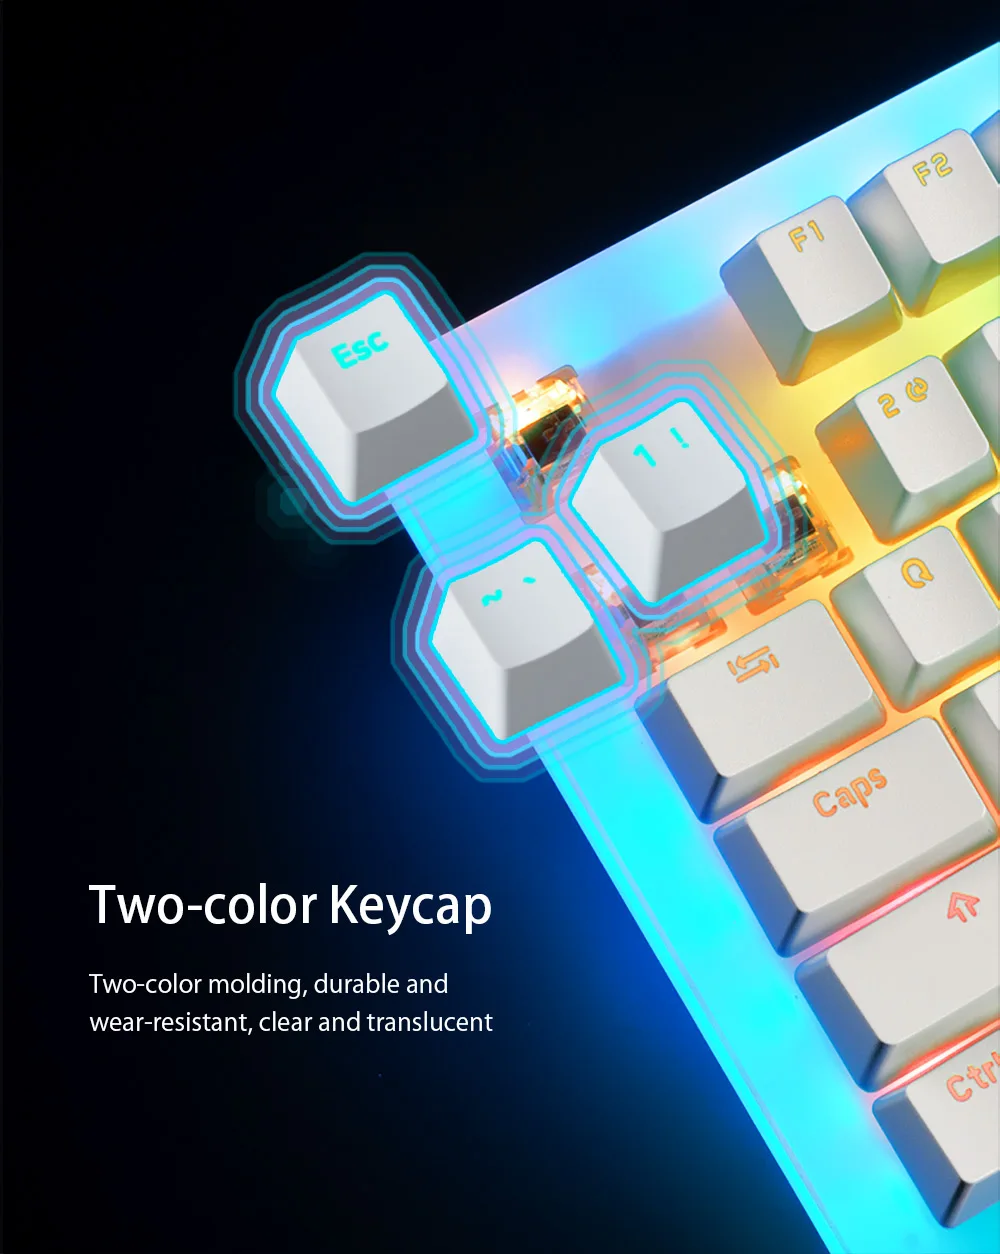 Womier 87 centrale K87 Hot Swappable RGB Gaming Mekanisk Tastatur 80% Gennemsigtig Glas Base Gateron Skifte med Krystallinsk Base